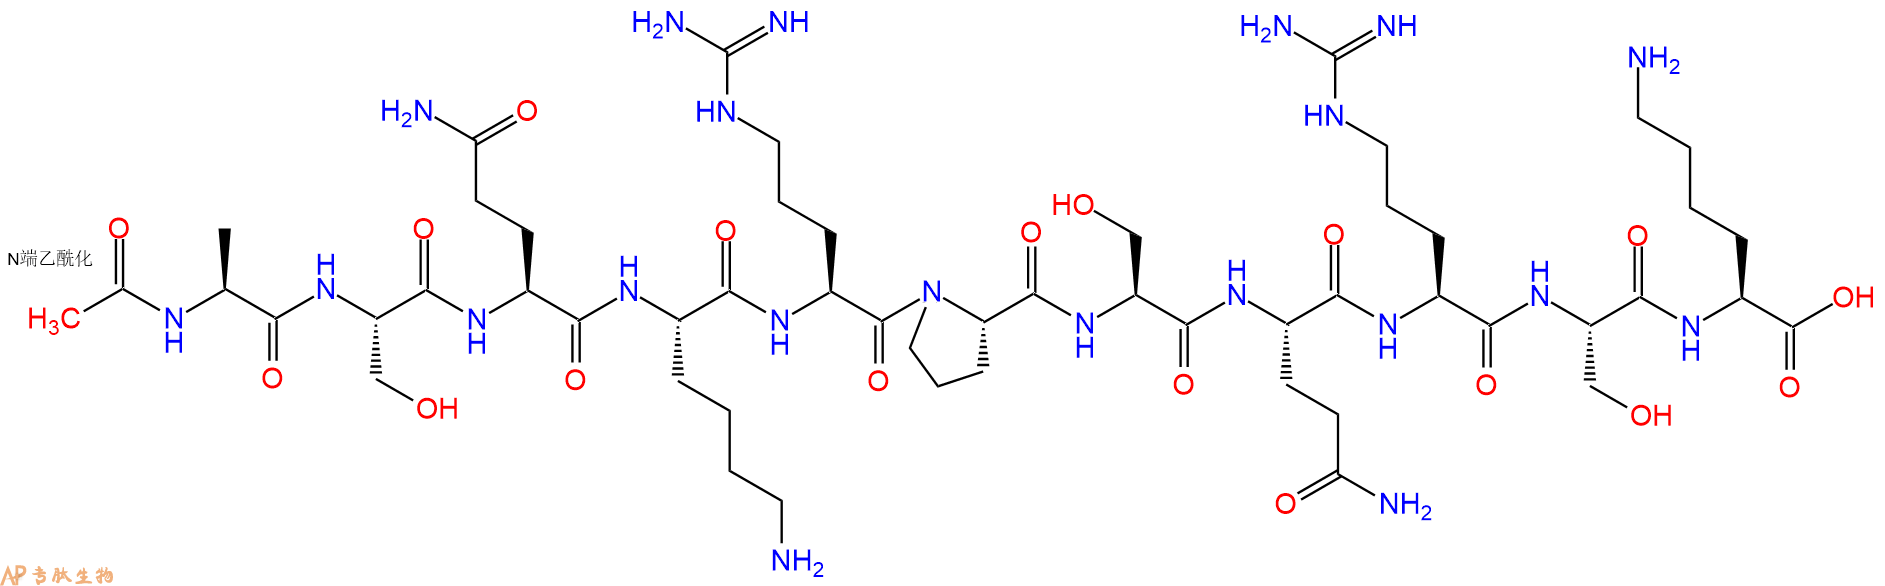 专肽生物产品髓鞘碱性蛋白Ac-MBP (1-11)125366-42-9